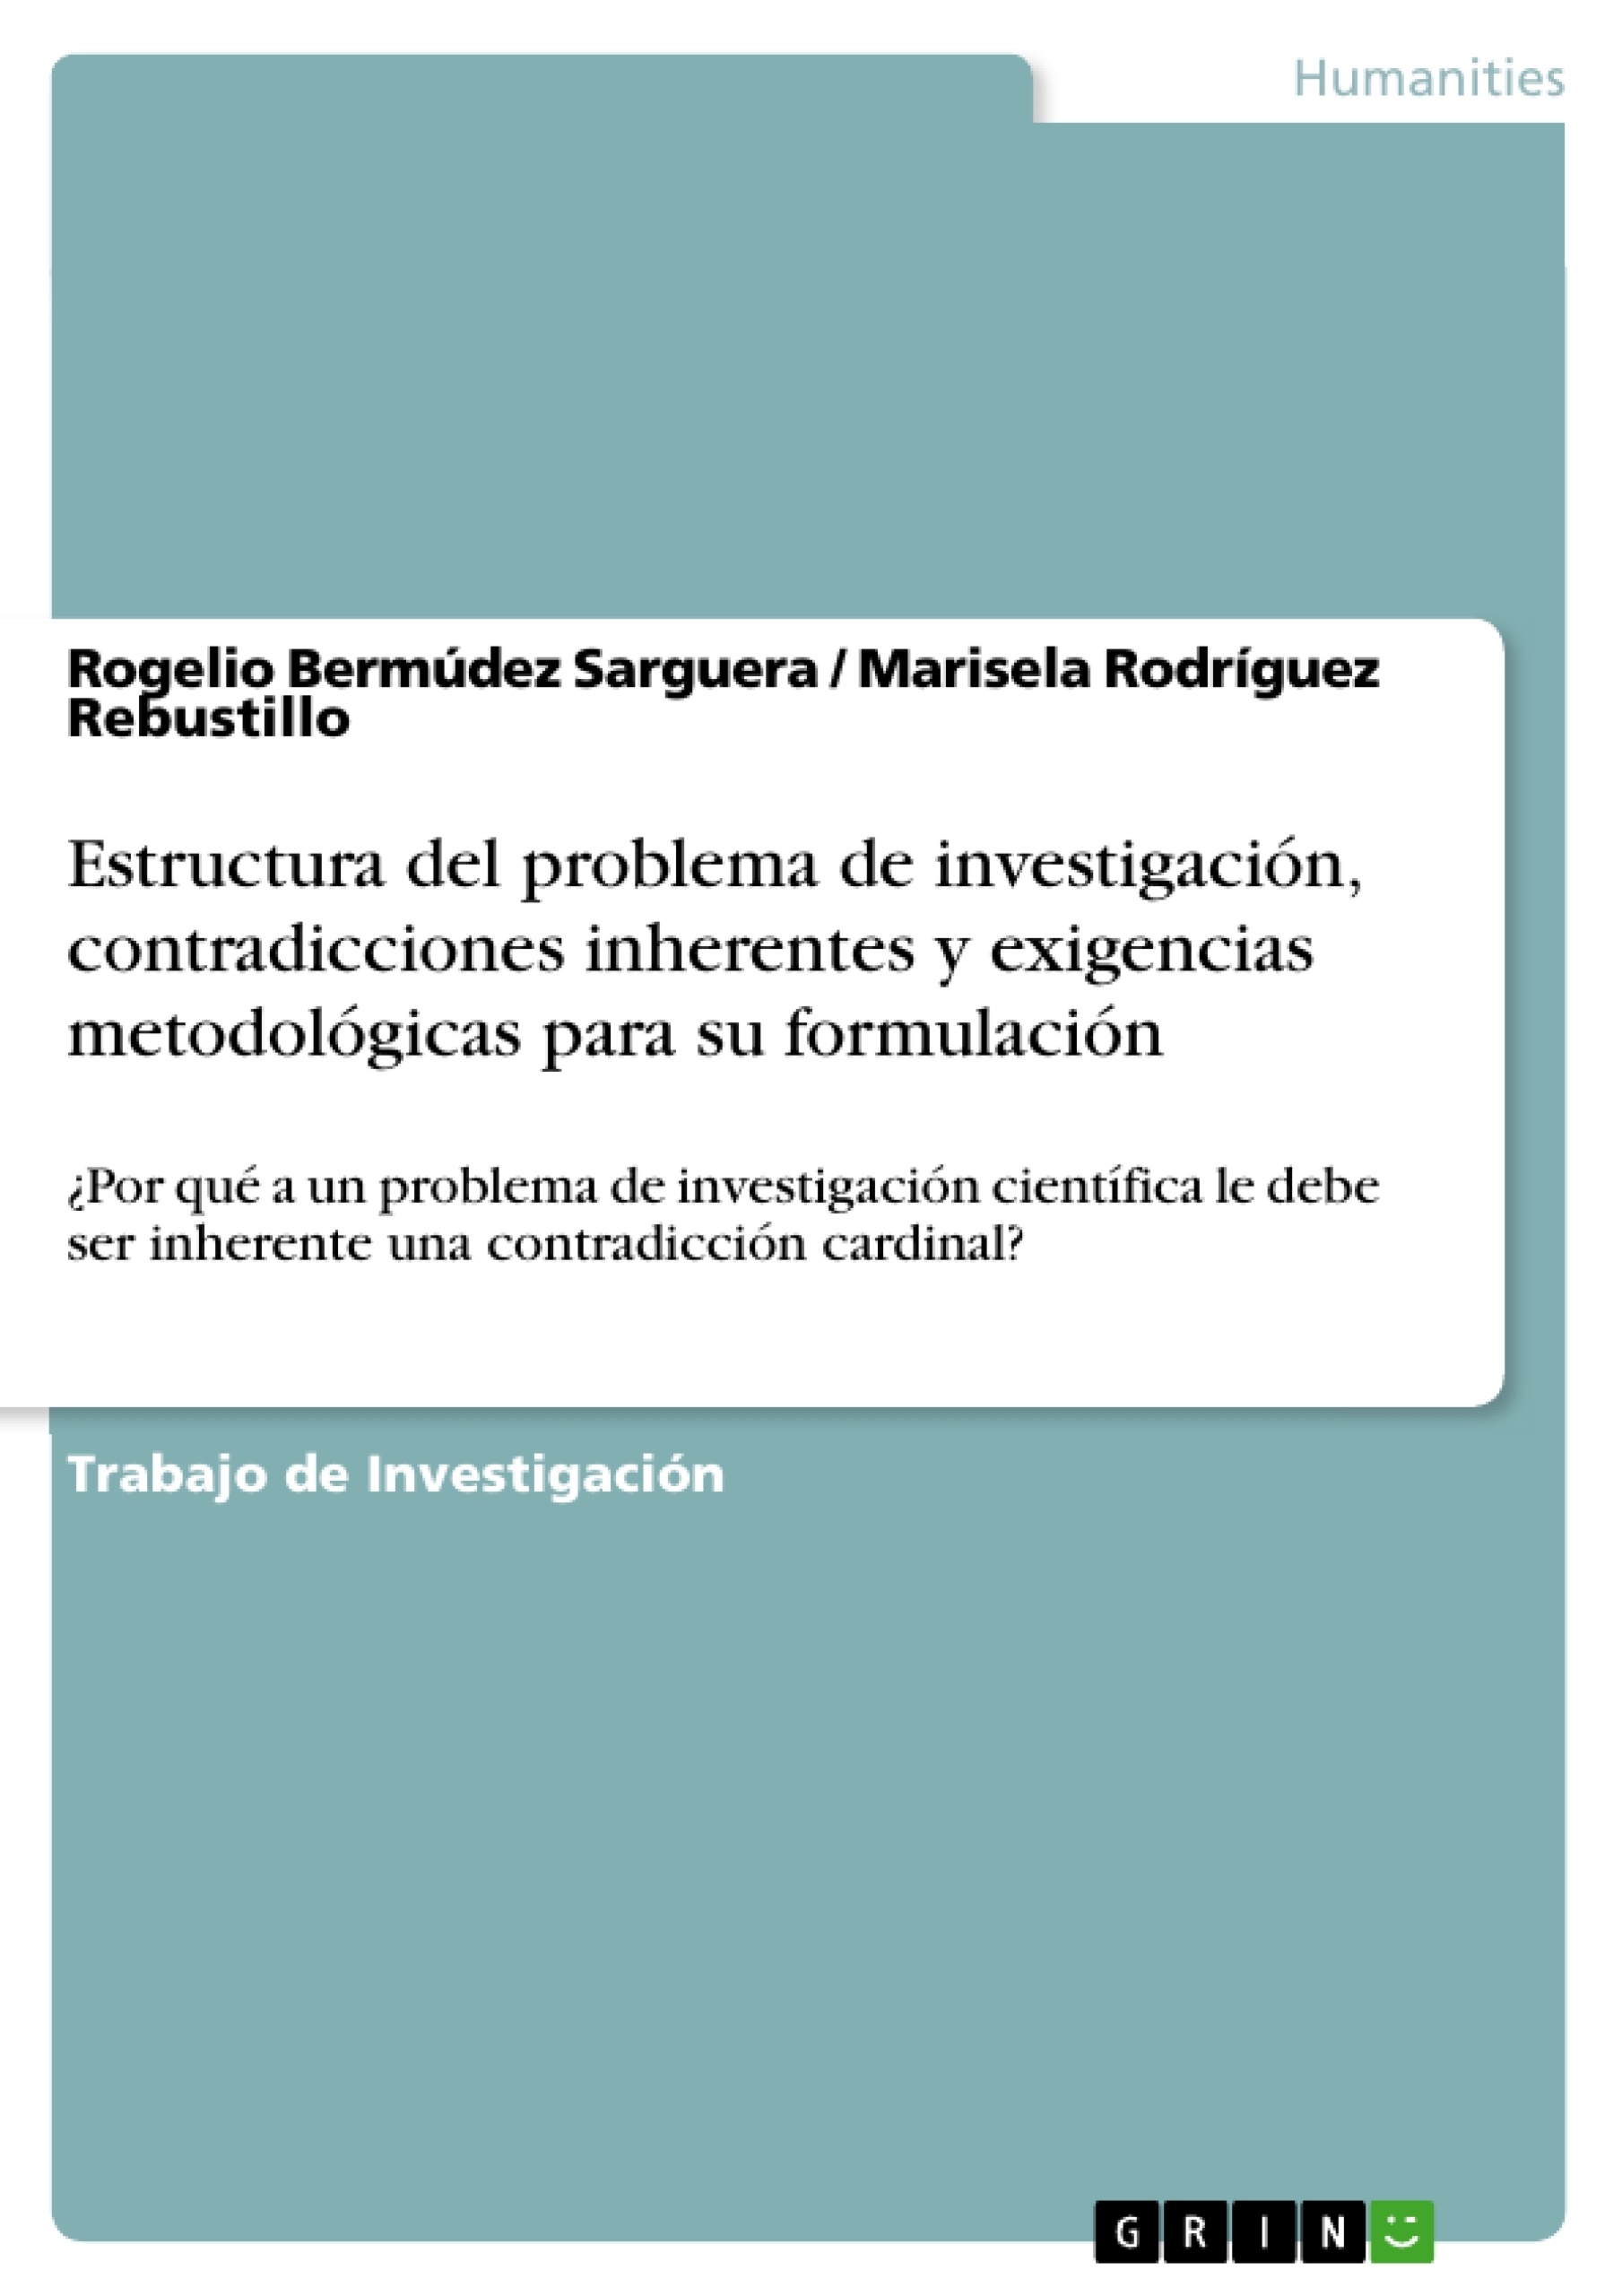 Titel: Estructura del problema de investigación, contradicciones inherentes y exigencias metodológicas para su formulación